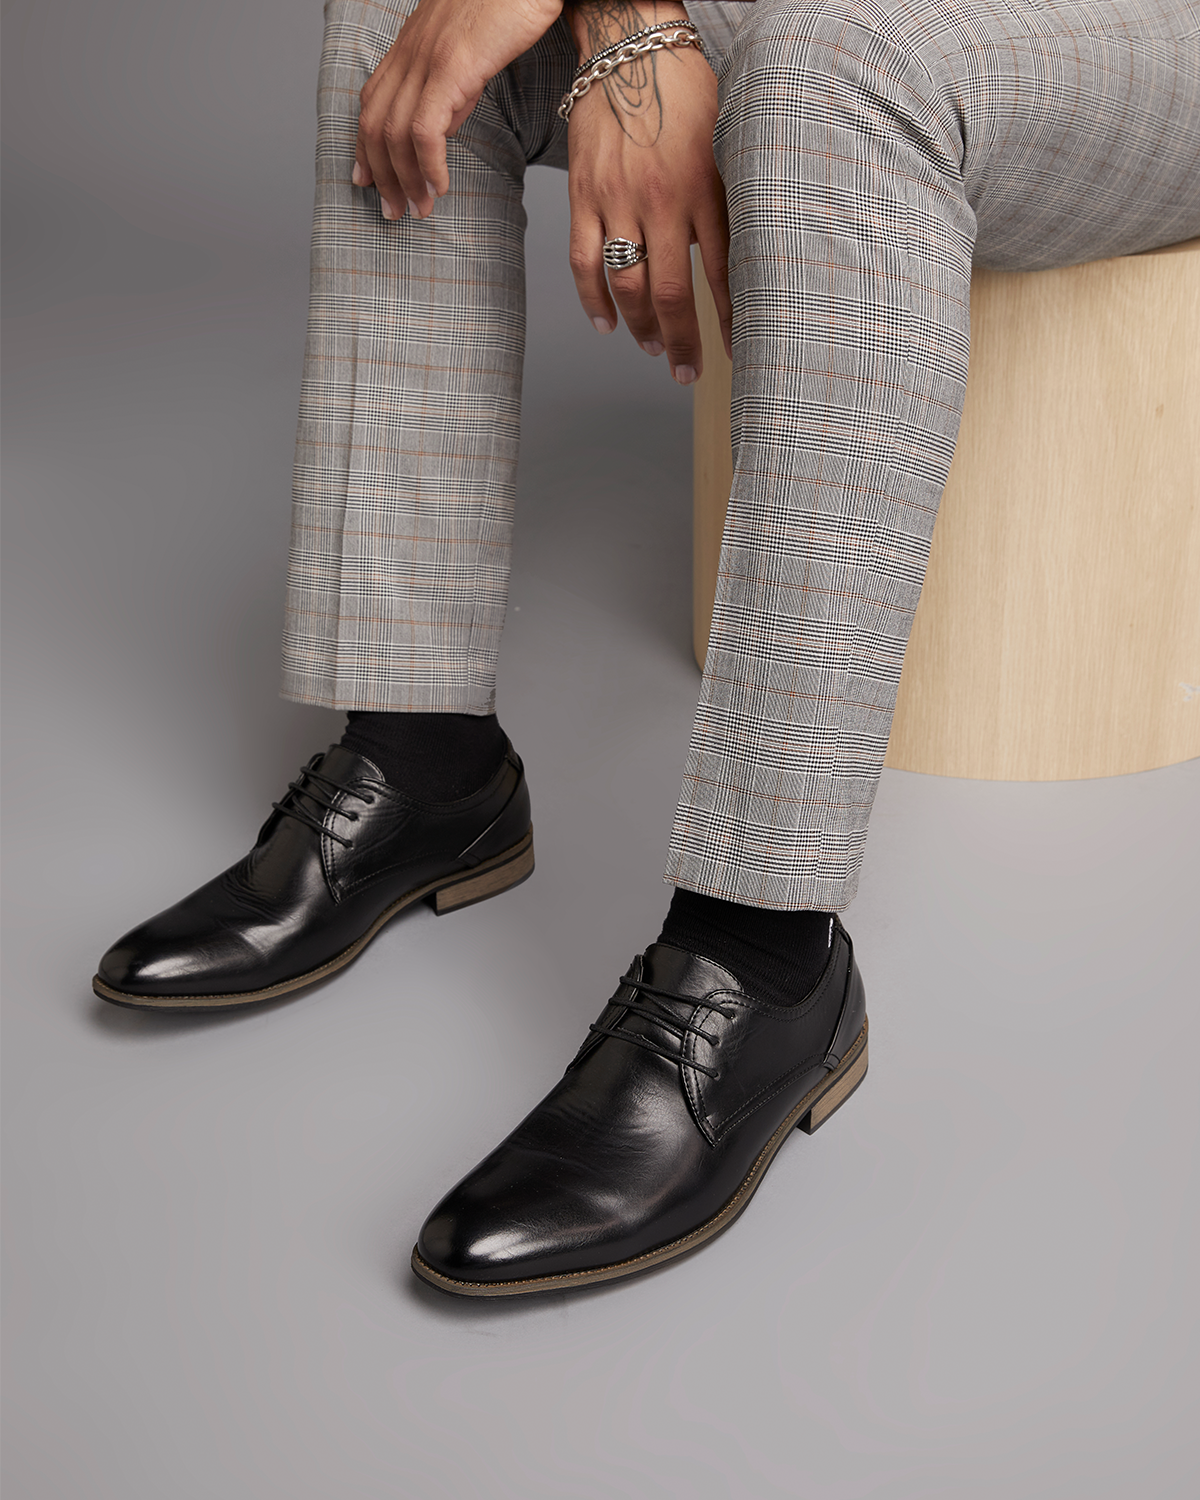 Uncut Shoes Rhine Black | Men's Dress Shoe | Derby | Lace Up | Work